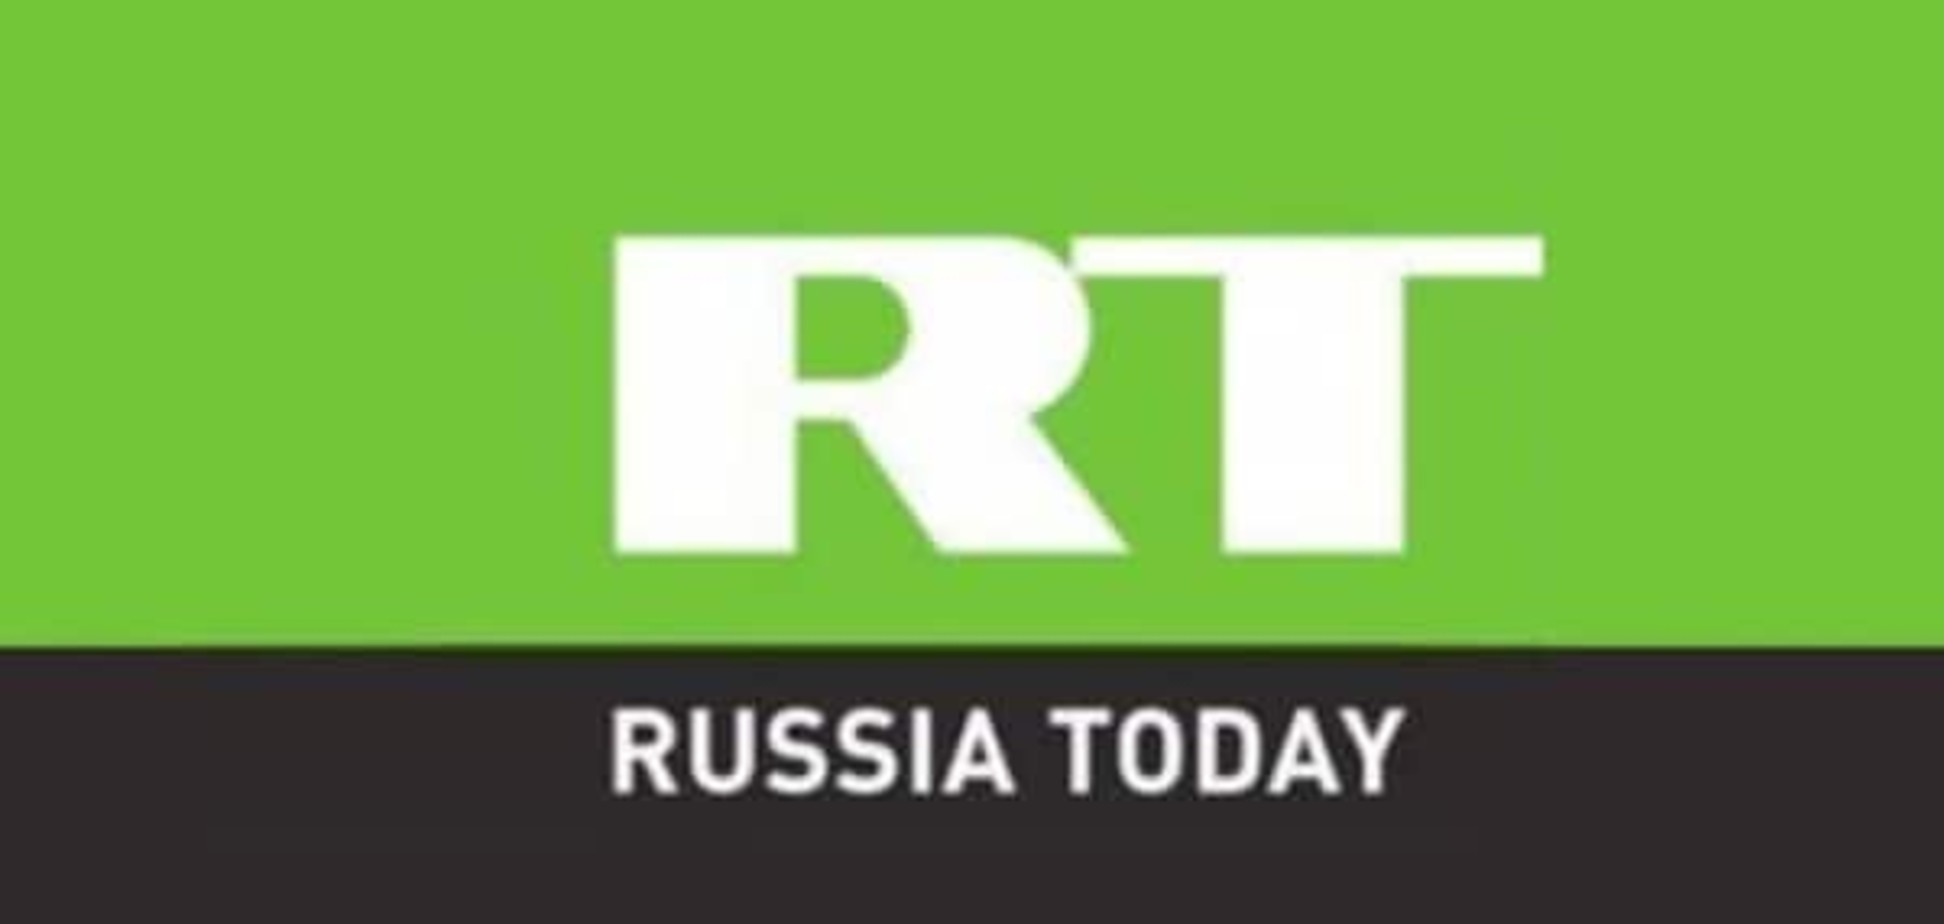 Приукрасили значимость: телепропаганда Путина выезжает на 'метросексуалах и бомжах' - The Daily Beast